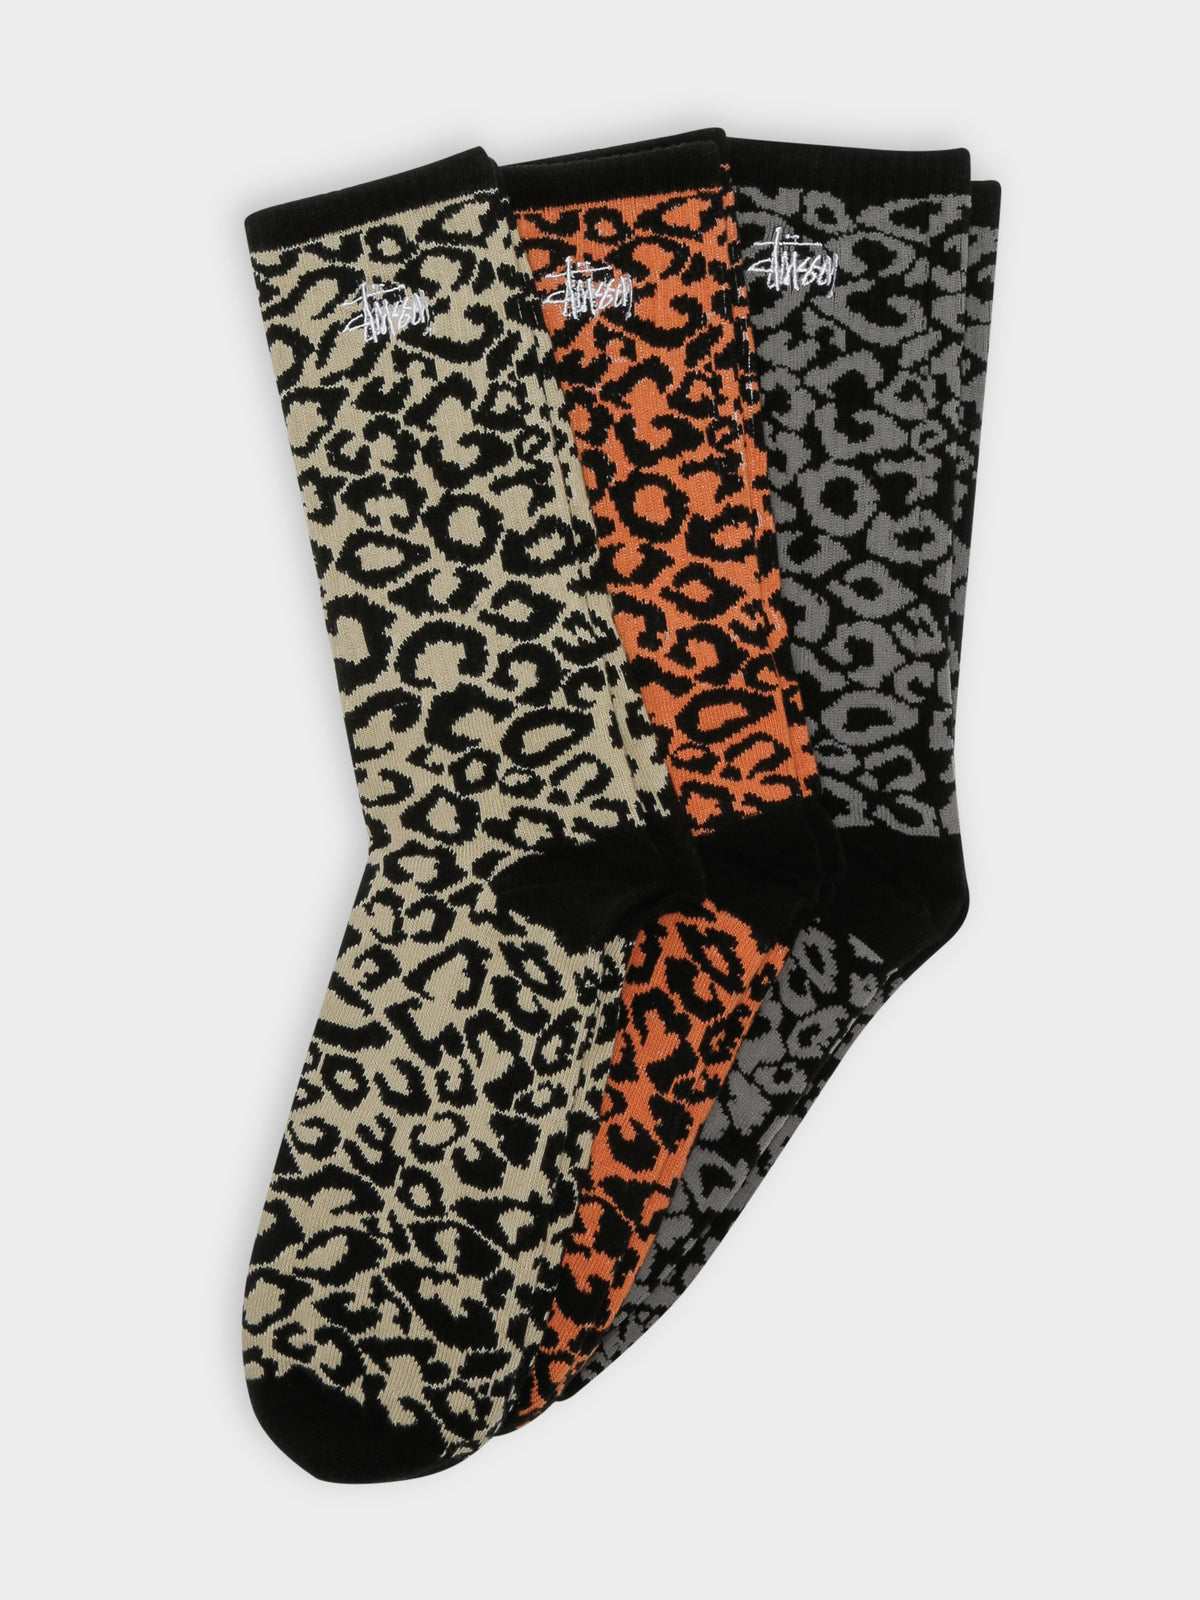 3 Pairs of Leopard Print Socks in Beige, Orange &amp; Grey